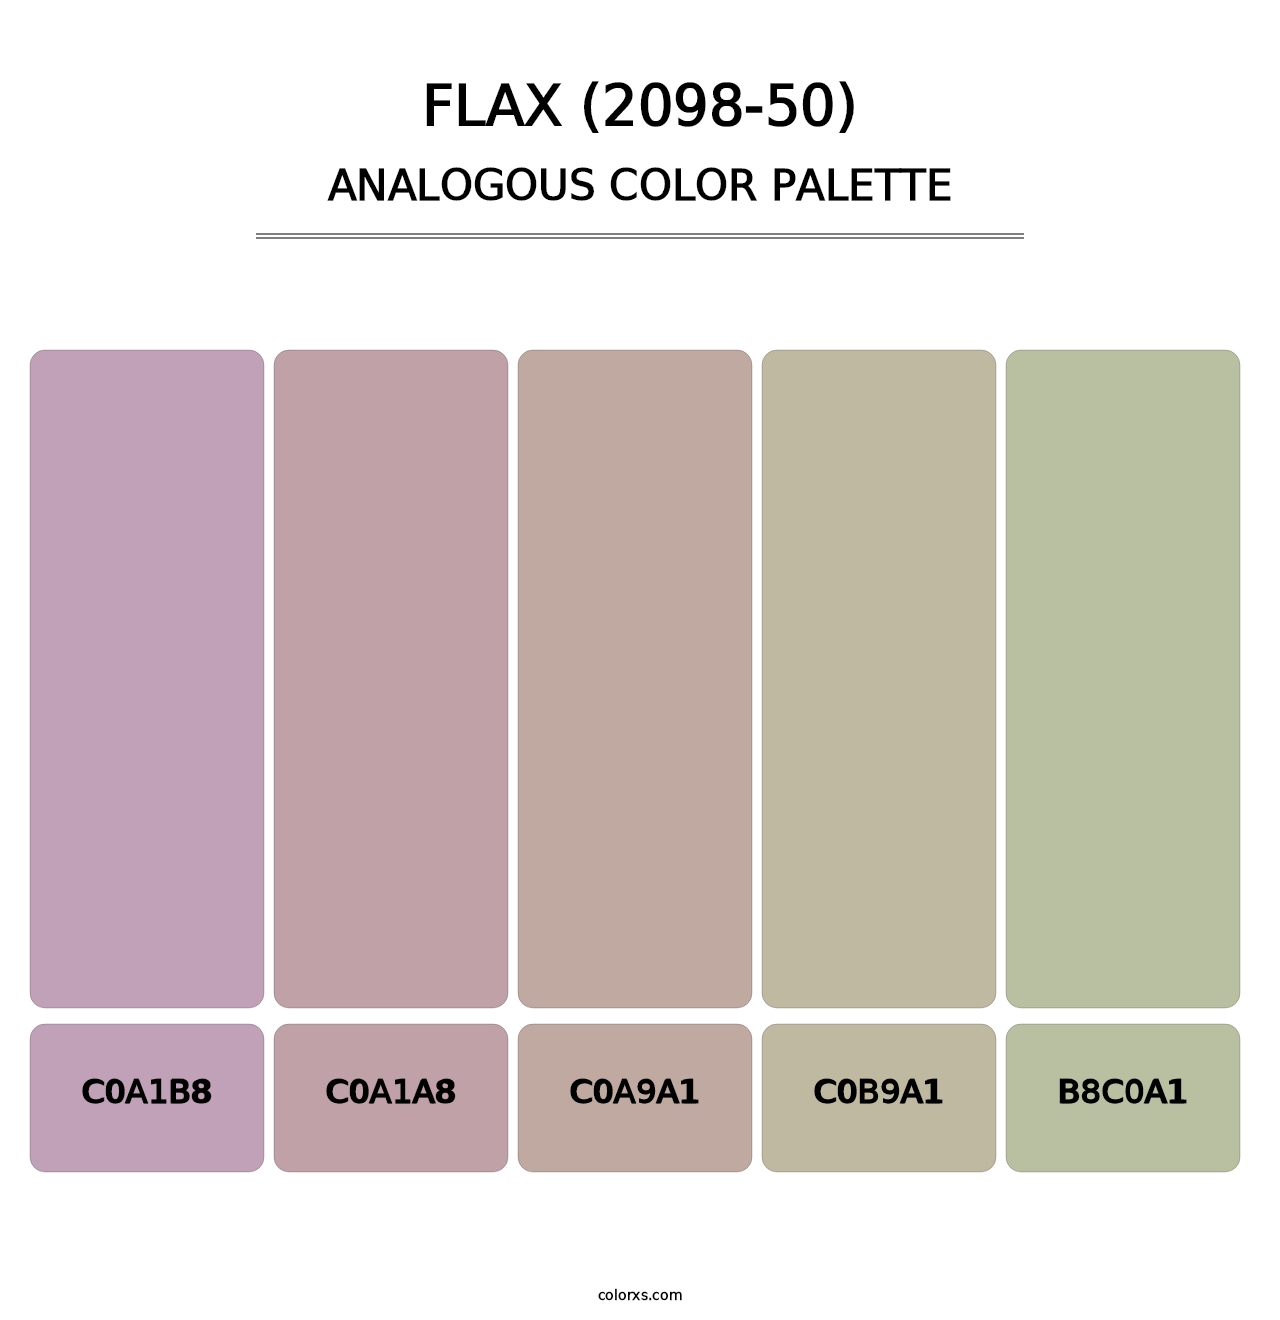 Flax (2098-50) - Analogous Color Palette